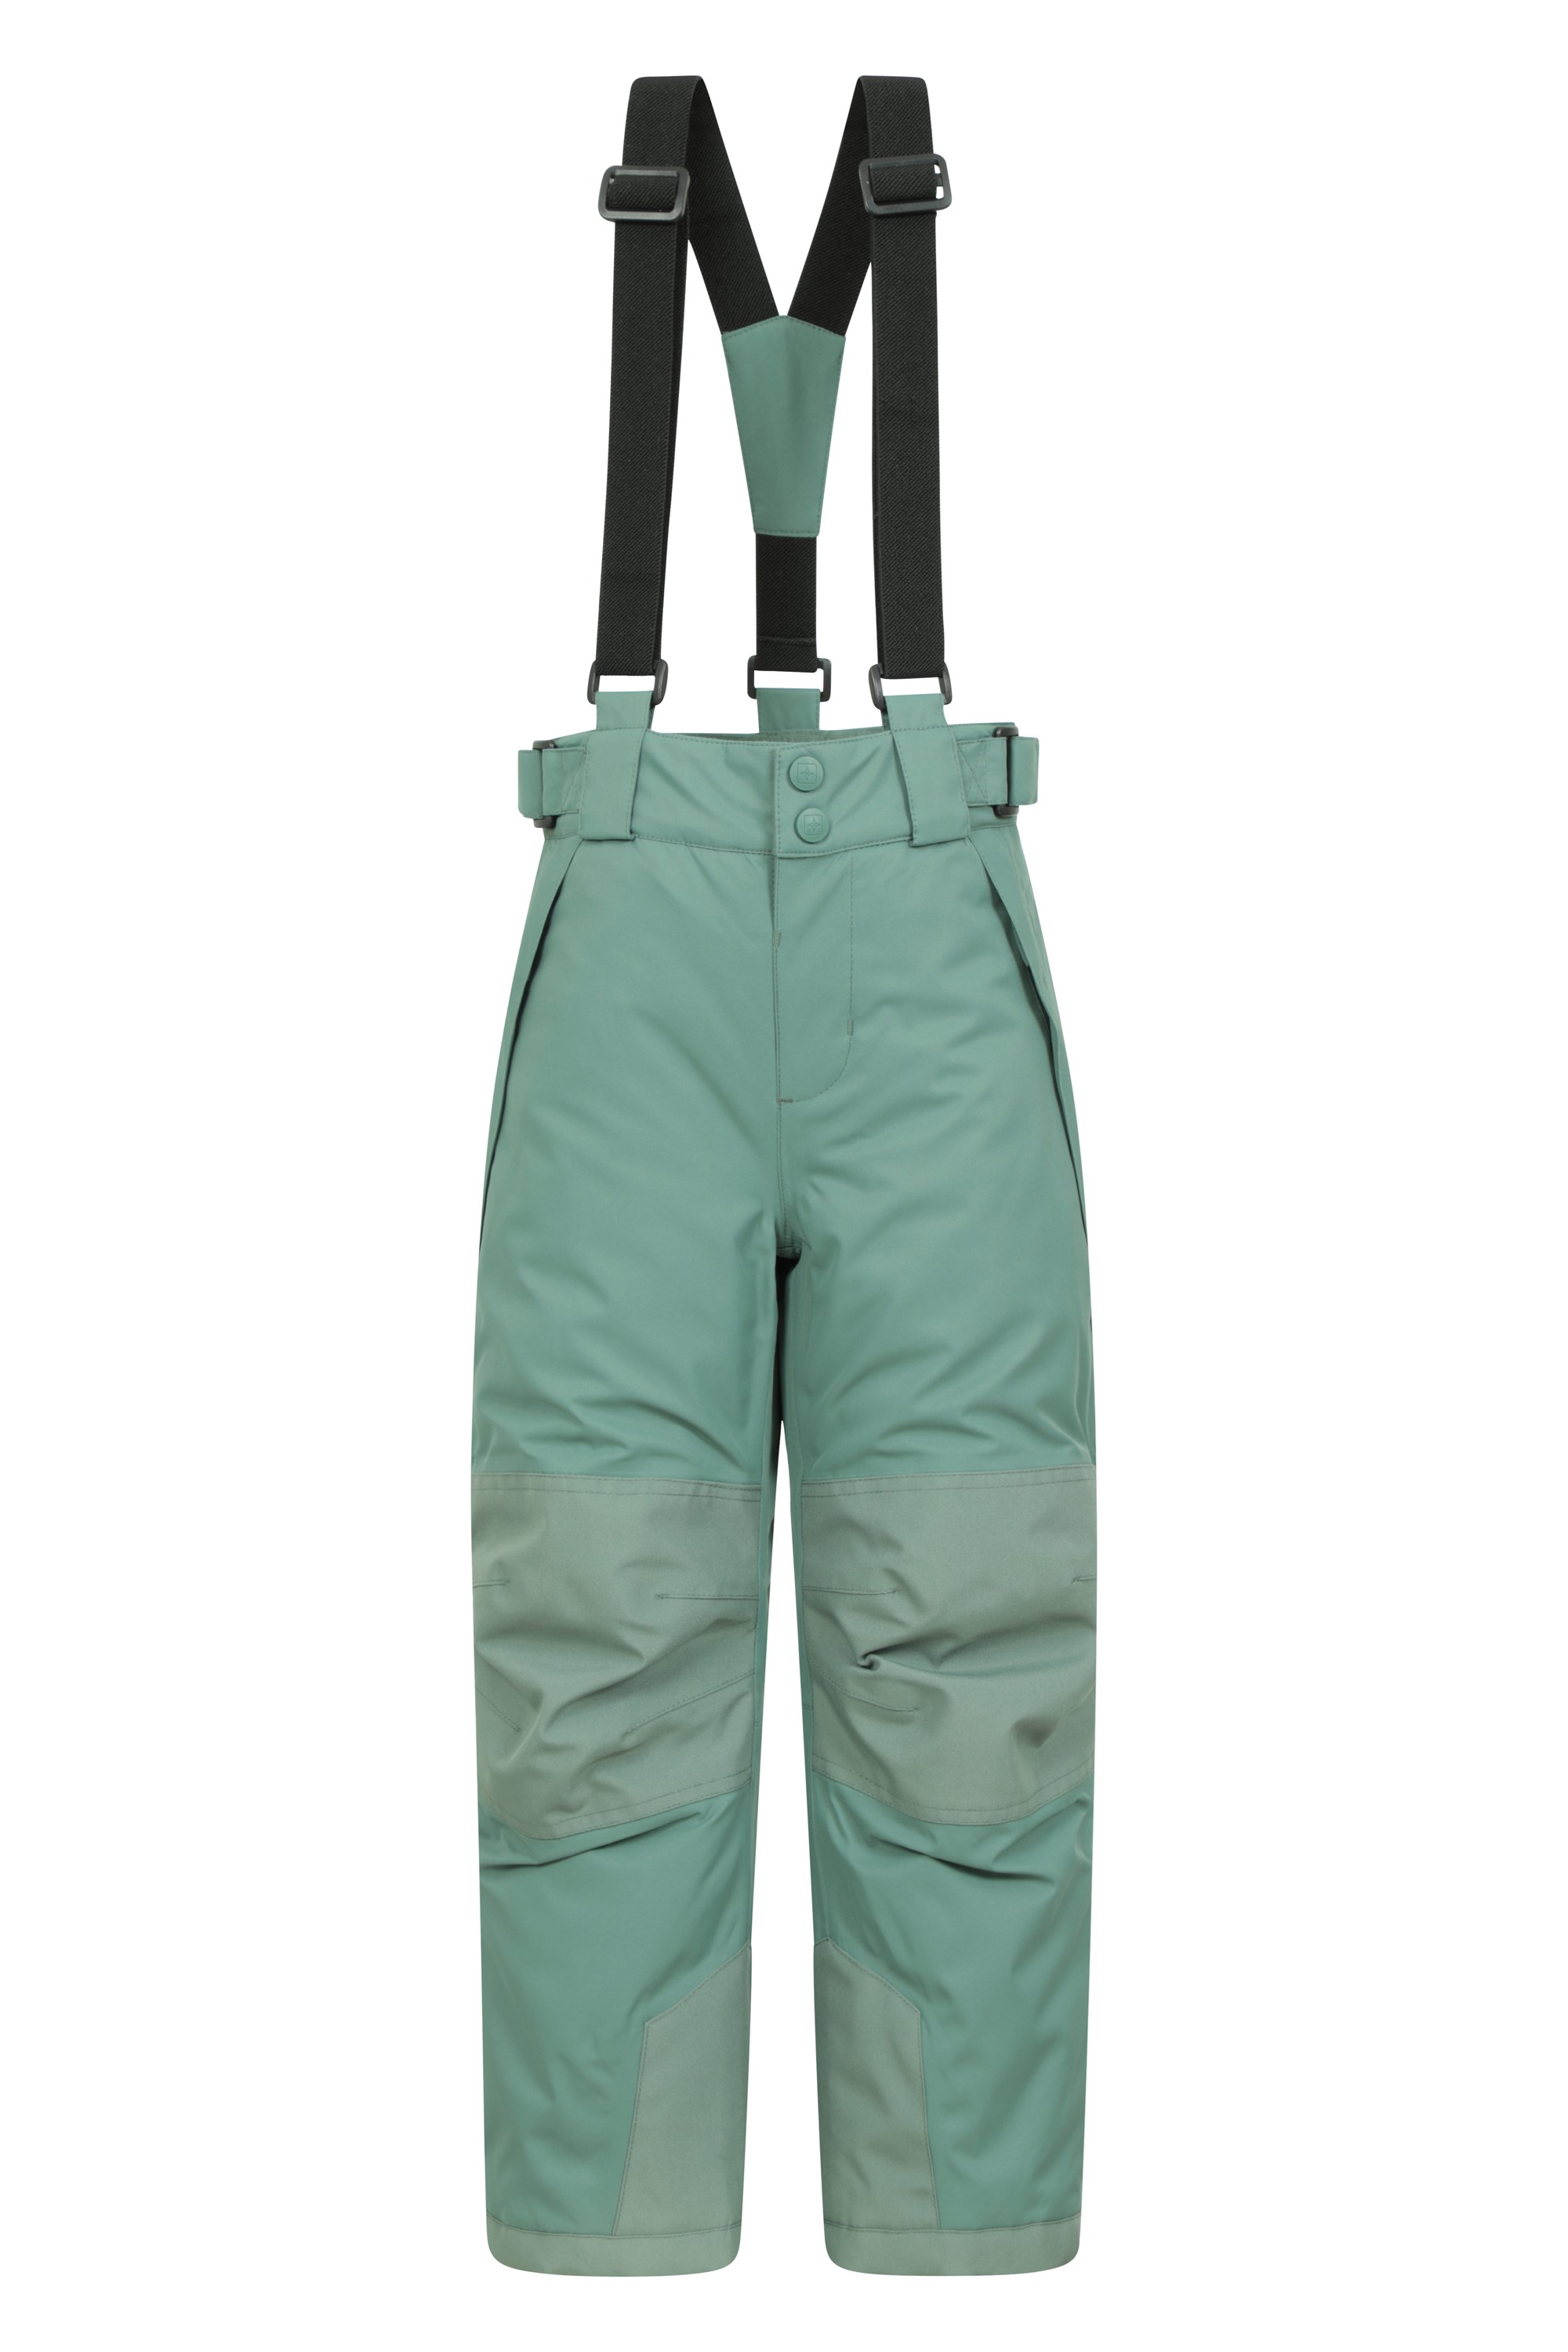 Falcon Extreme Kids Waterproof Ski Pants - Green